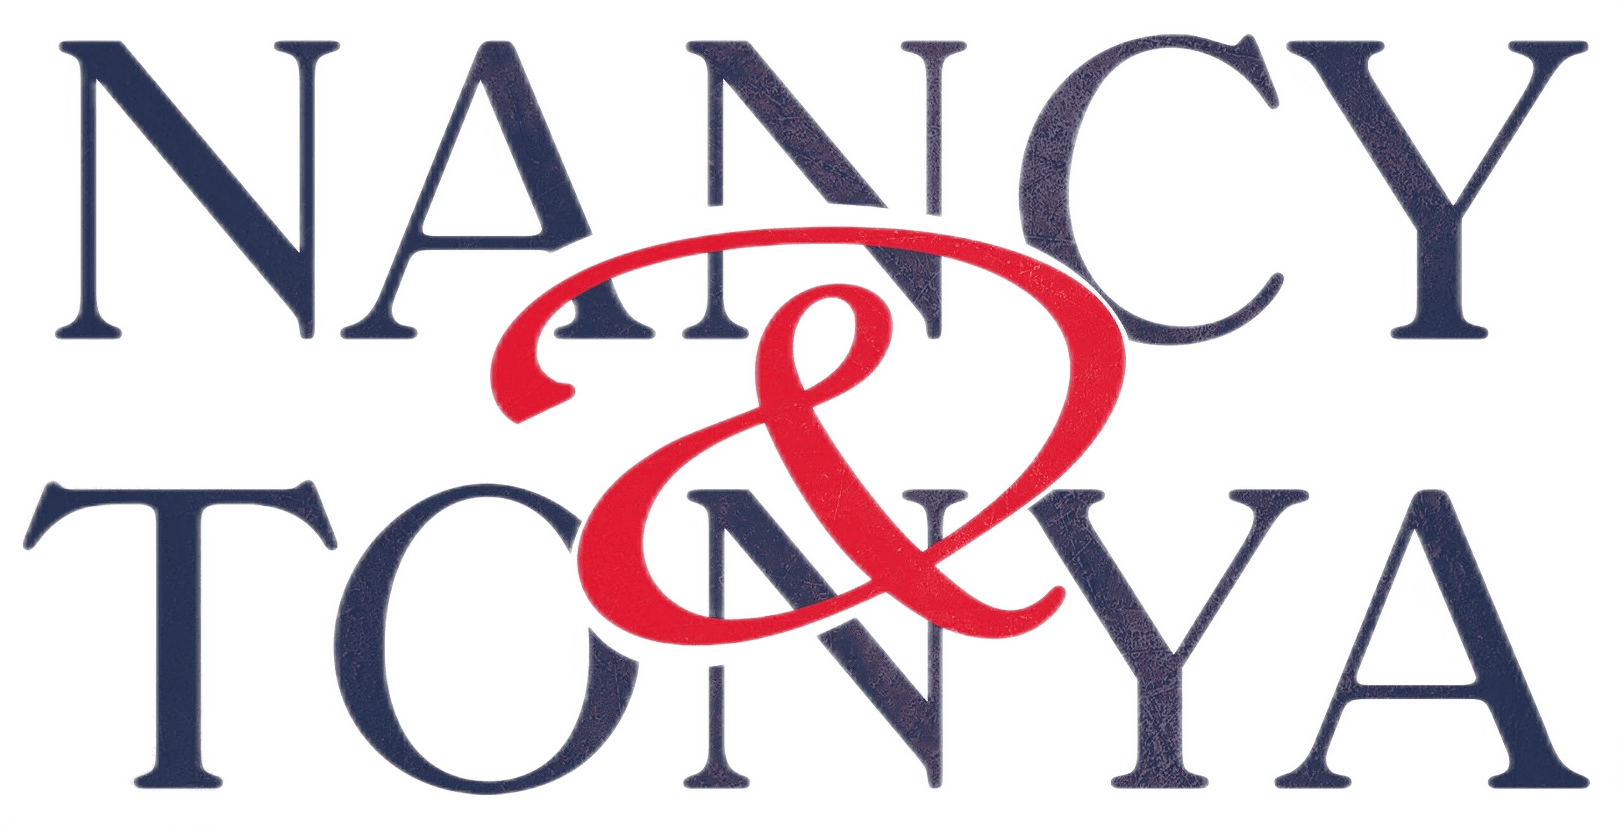 Nancy & Tonya logo